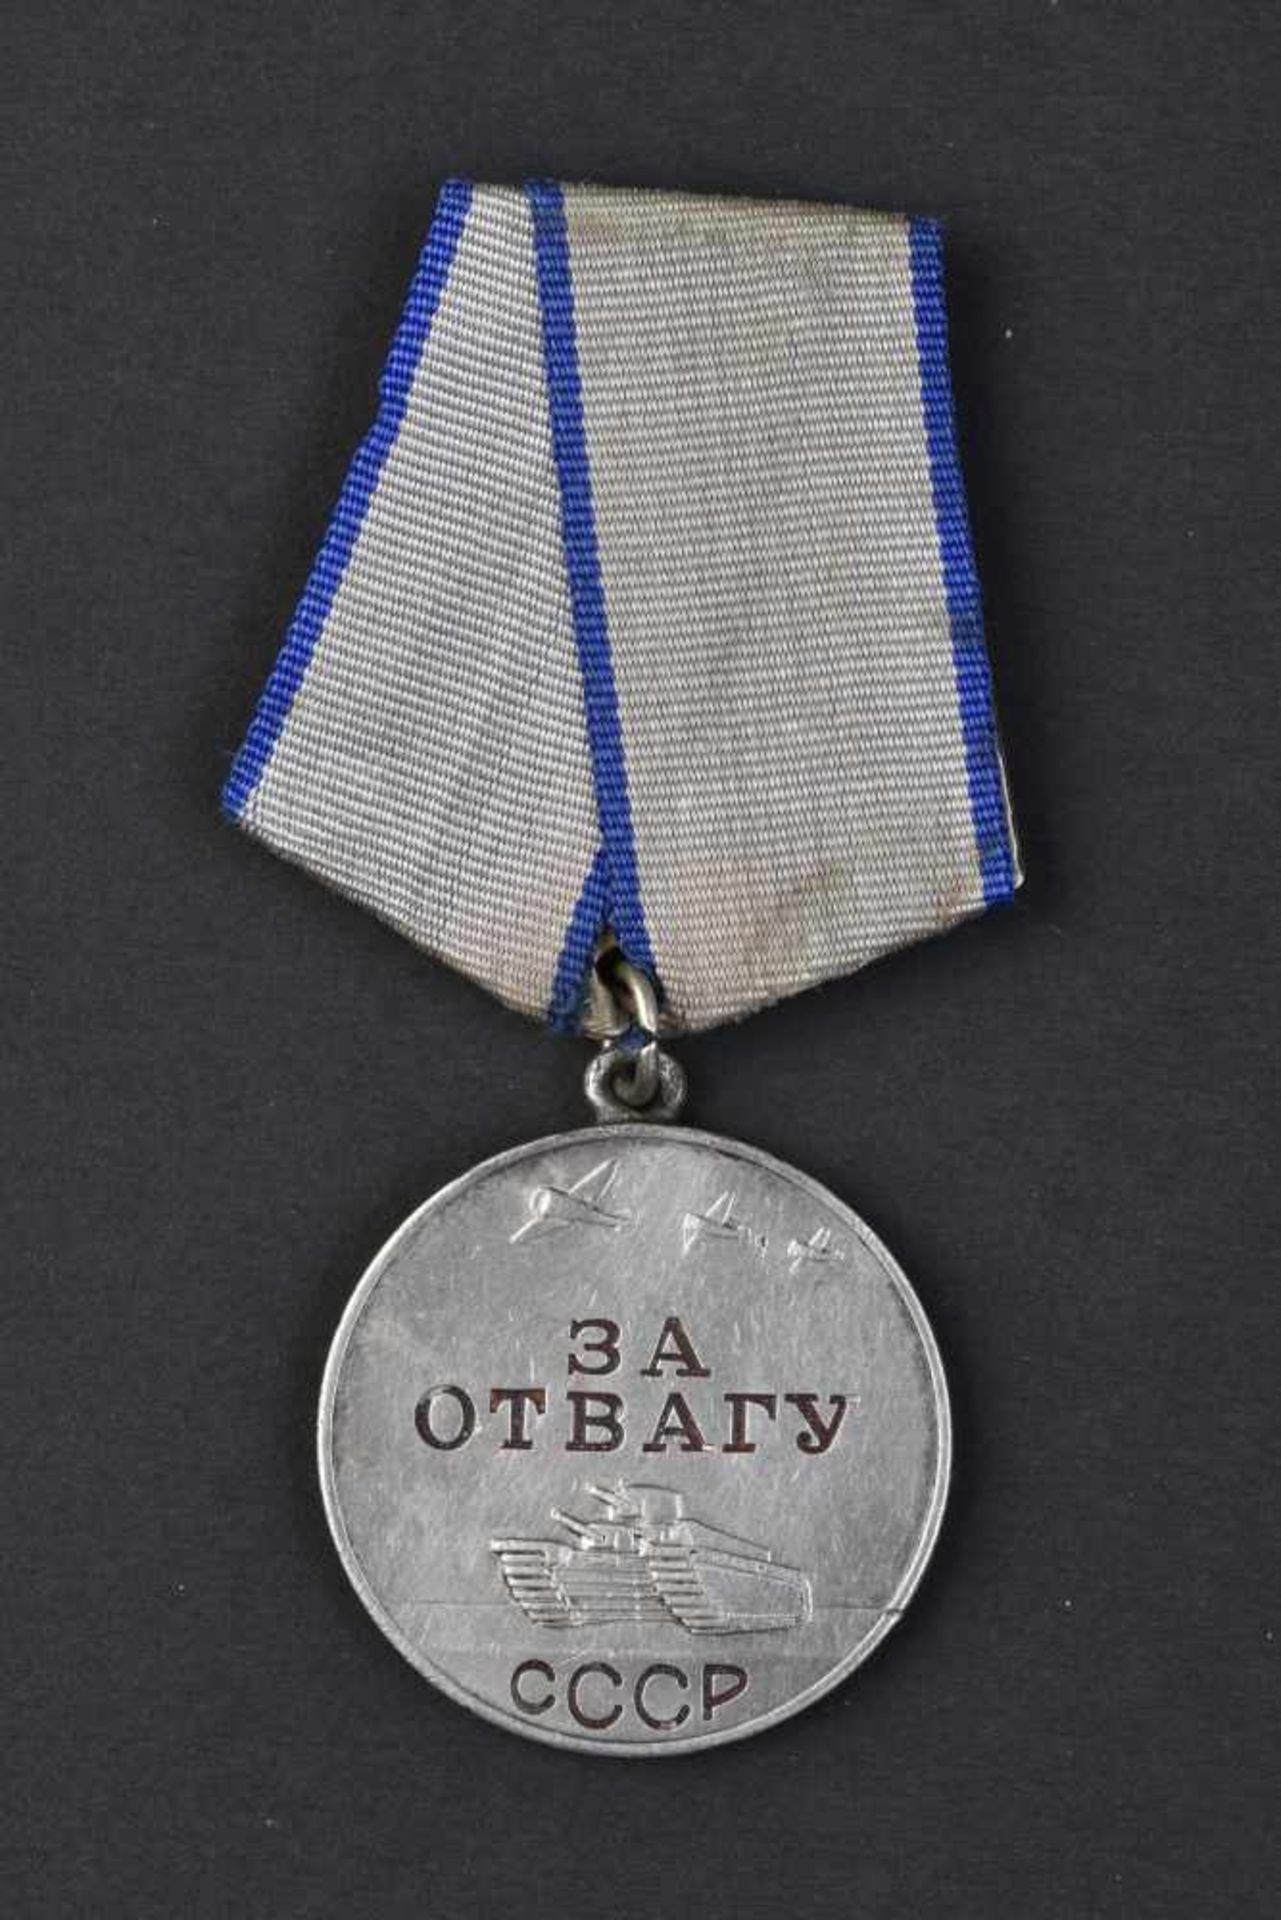 Médaille pour la Bravoure n° 436492, attribuée le 30 septembre 1943, au sapeur ROMANOV VIKTOR